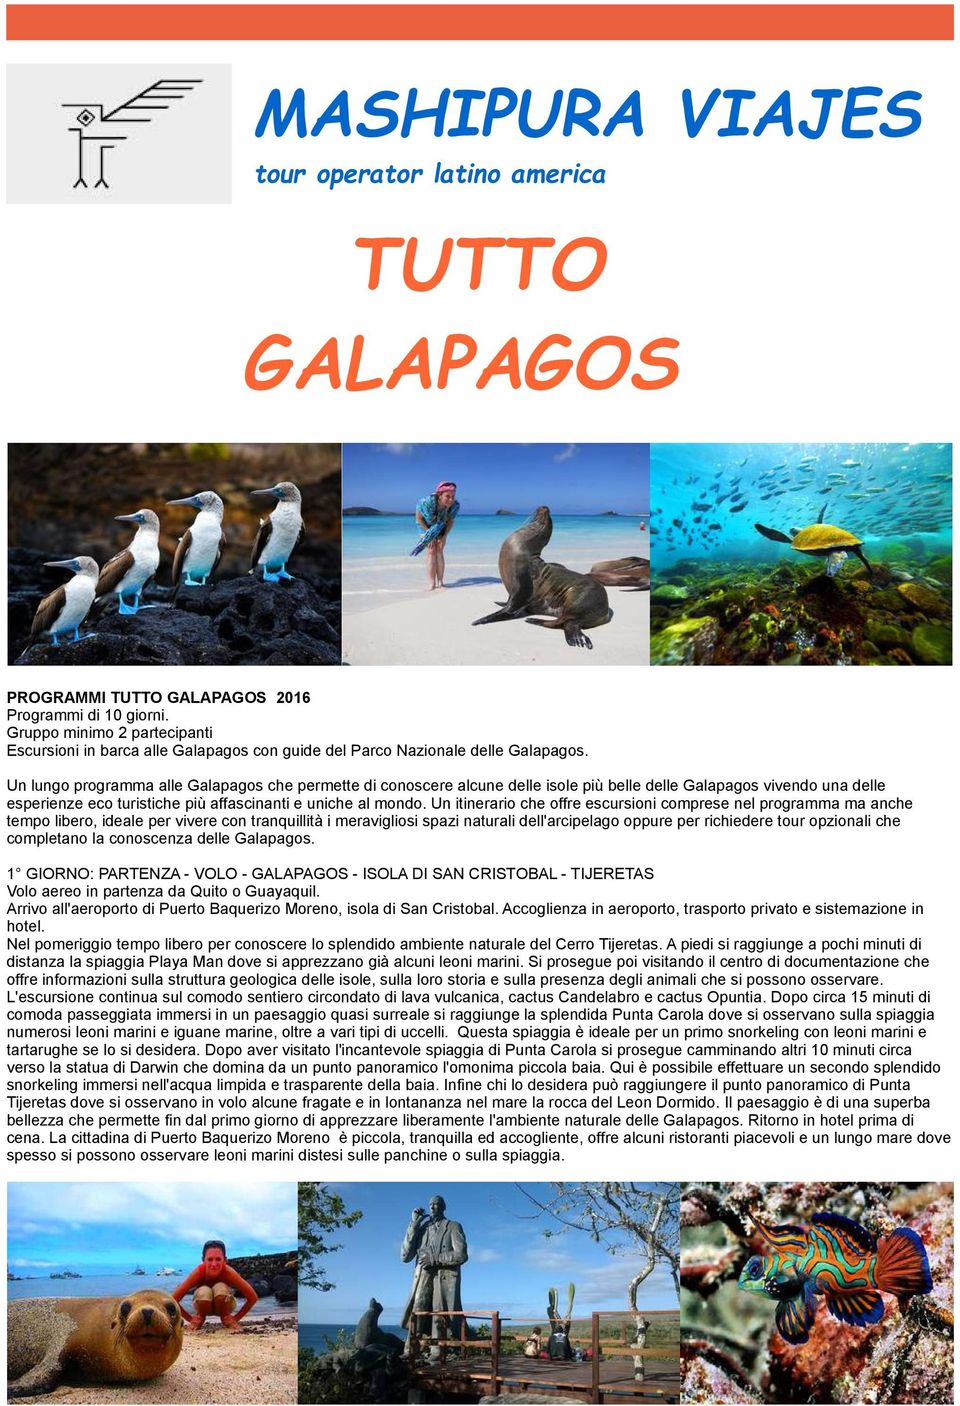 Un lungo programma alle Galapagos che permette di conoscere alcune delle isole più belle delle Galapagos vivendo una delle esperienze eco turistiche più affascinanti e uniche al mondo.